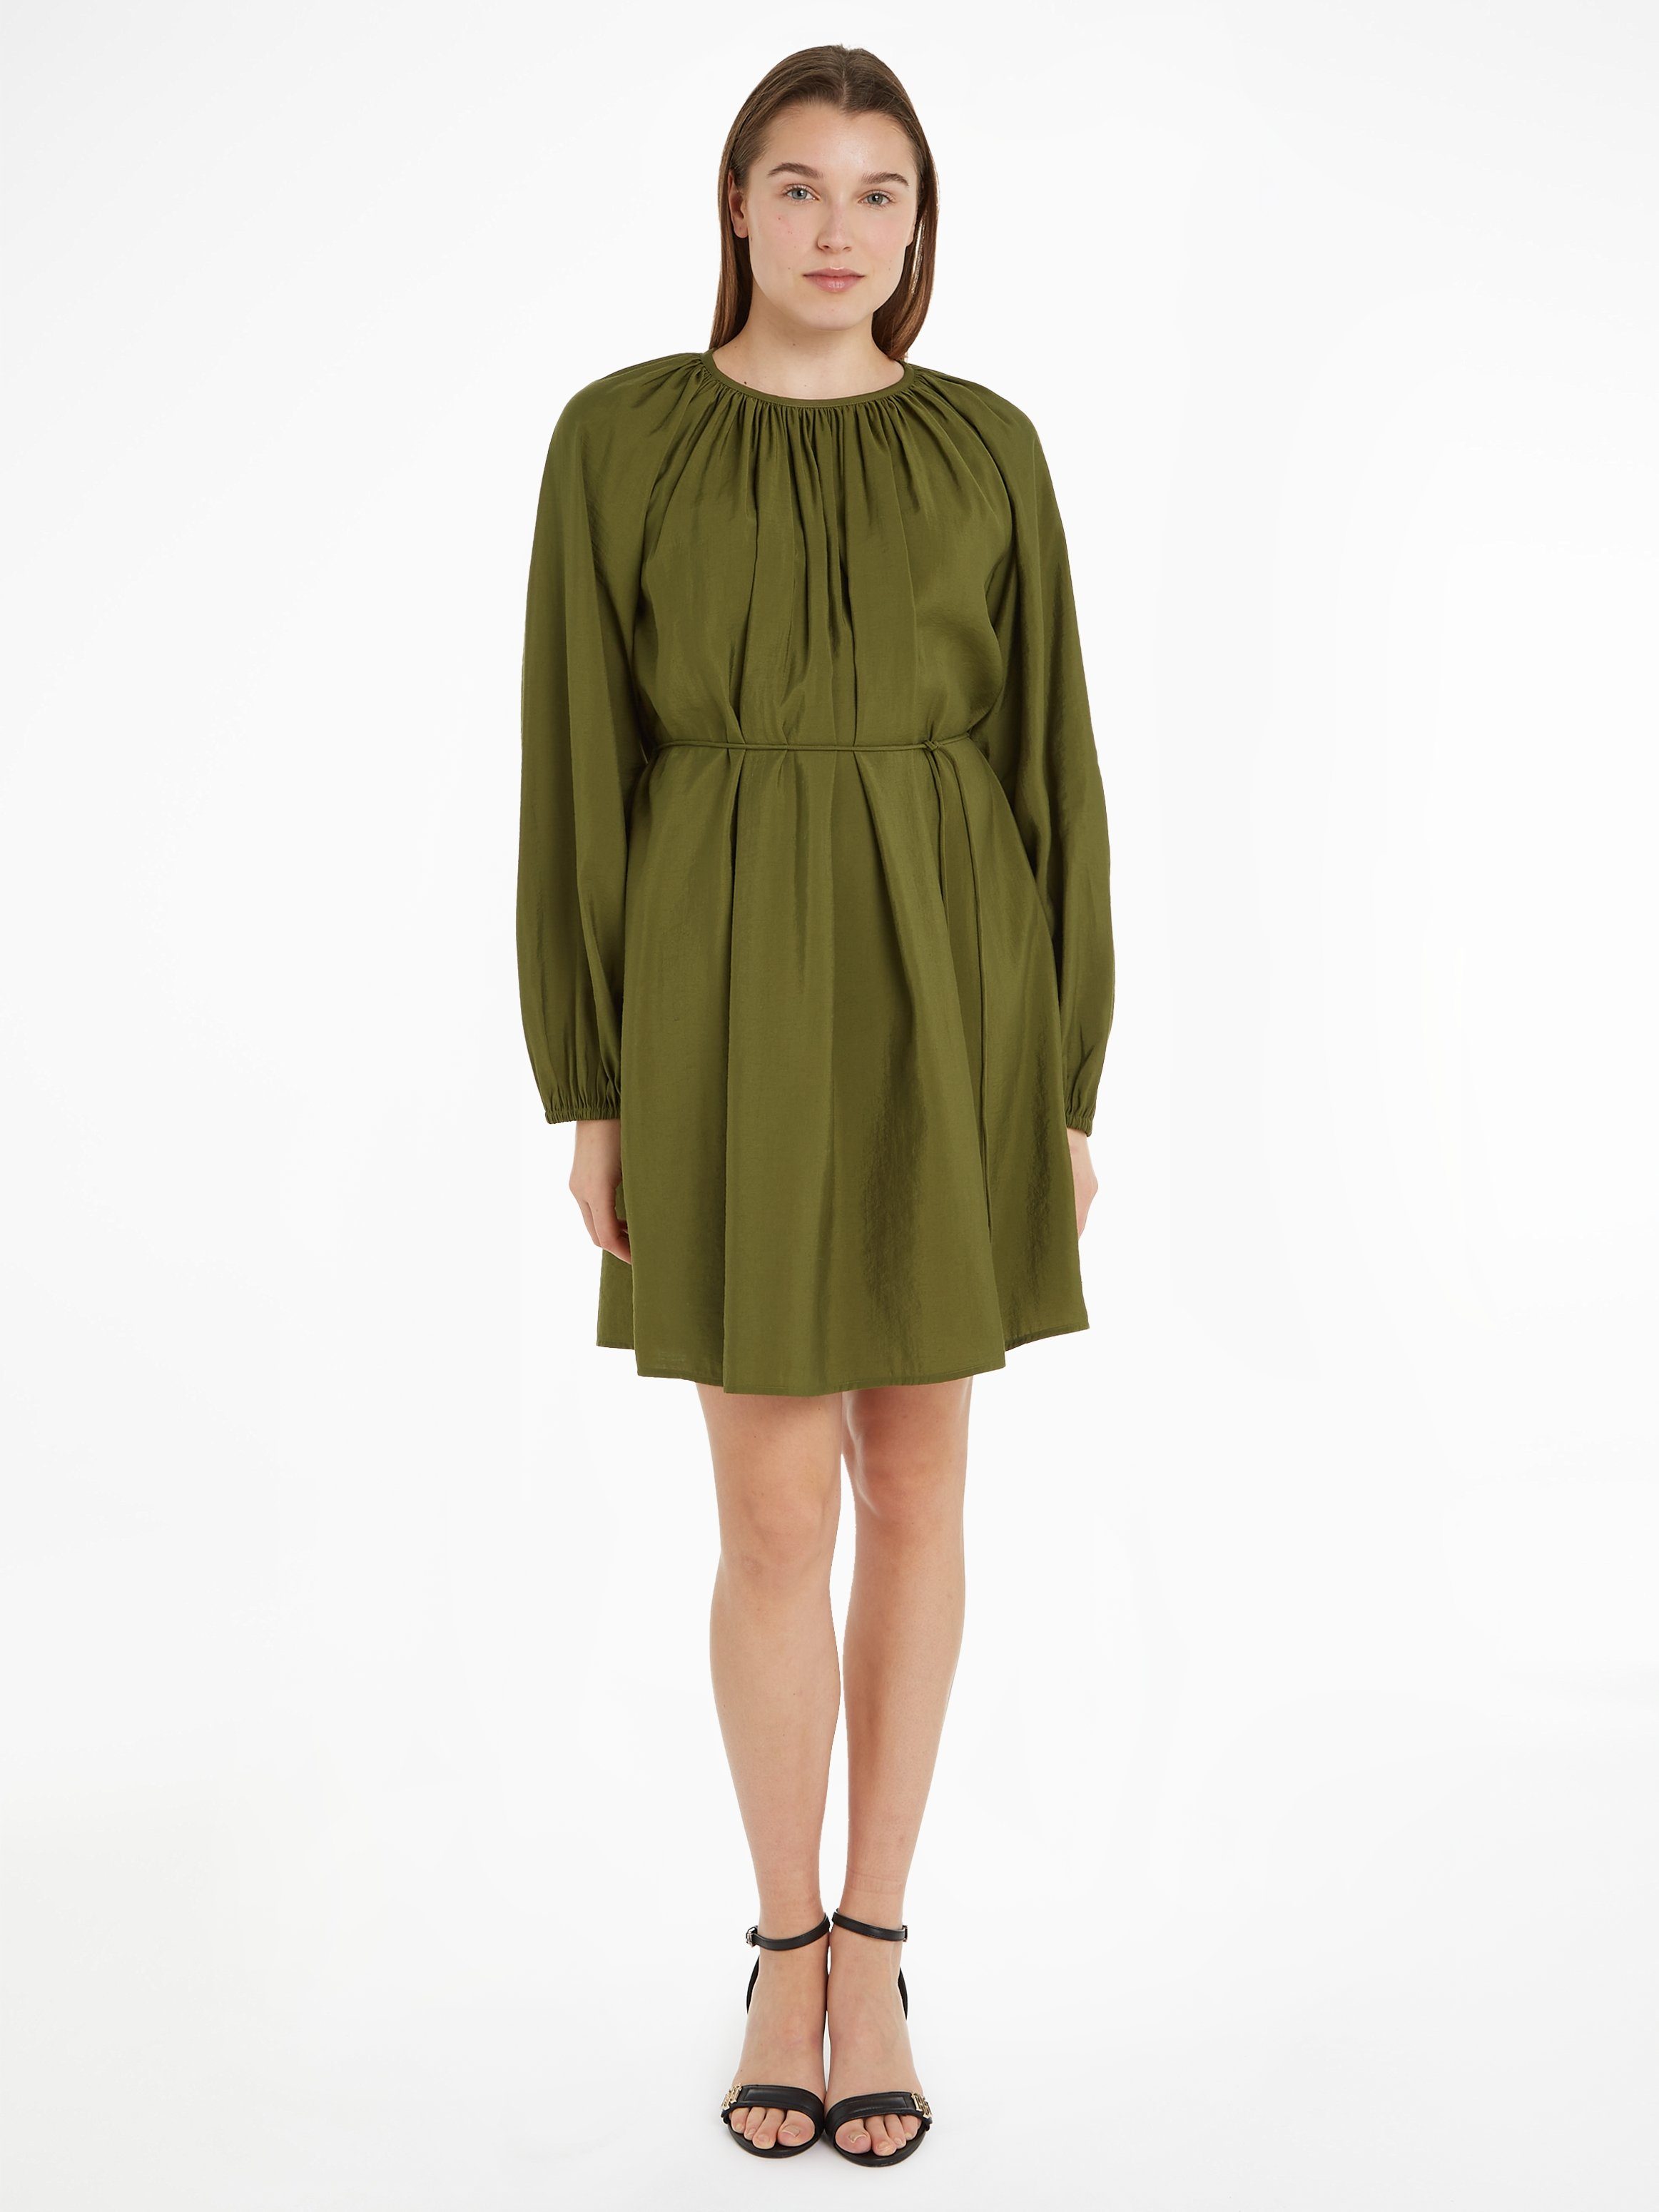 [Wir haben auch eine große Auswahl!] SHORT MODAL mit Green Tommy DRESS Taillenbund Blusenkleid Hilfiger TEXTURED Putting